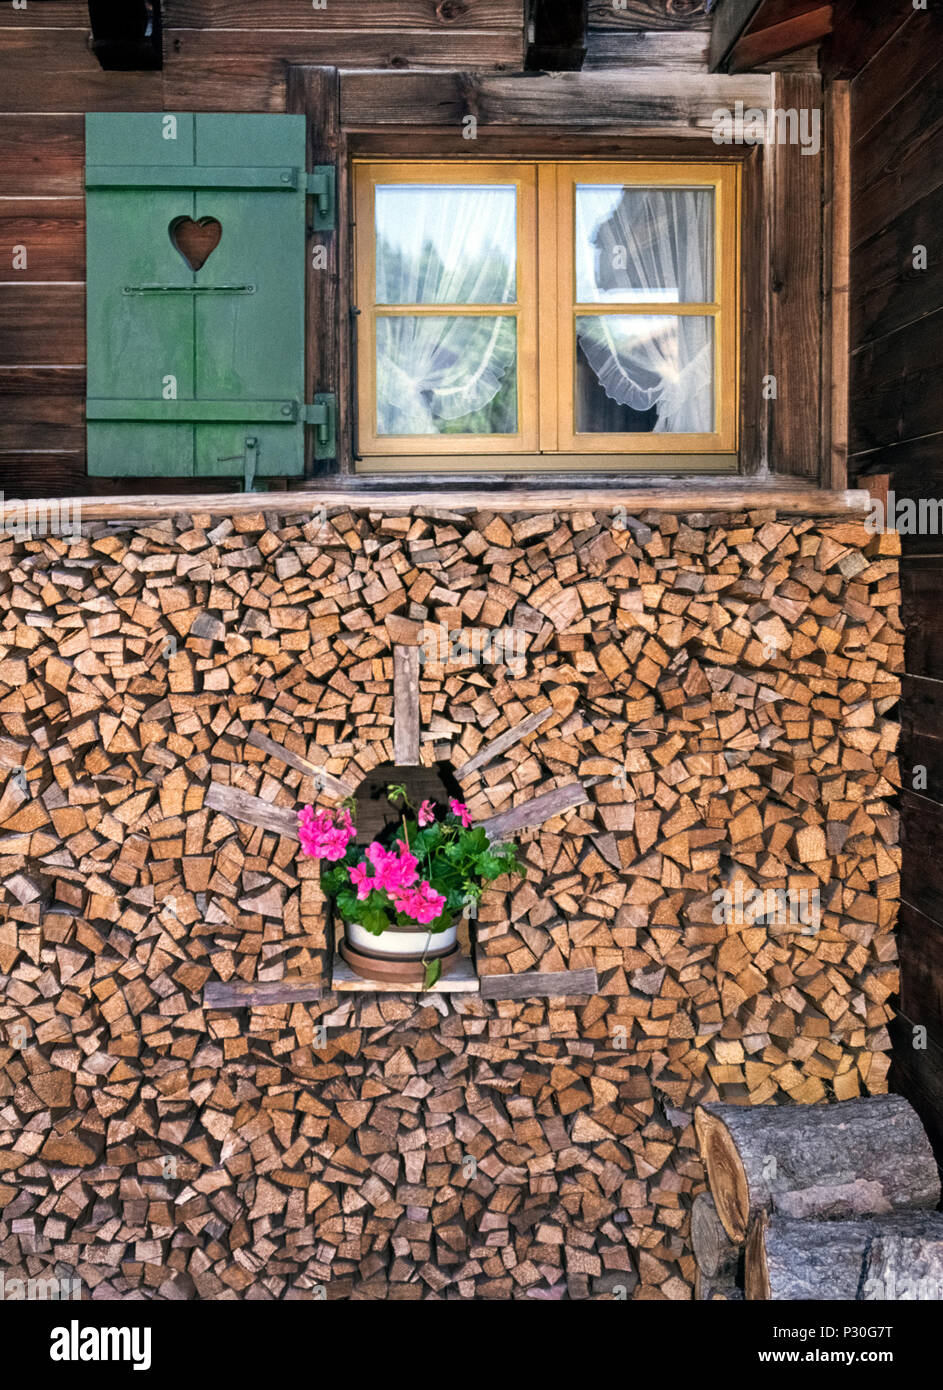 Taglio fresco e spaccare la legna è sapientemente impilati attorno ad una pianta in vaso con fiori di colore rosa al di fuori di un casale rustico in Oberland Bernese, la Scenic highland regione in Svizzera che attira escursionisti e sciatori per i suoi villaggi alpini che includeva Grindelwald, Lauterbrunnen, Wengen e Murren. Stufe a legna sono stati per lungo tempo comune in molte case ma non vi è la preoccupazione che l' inquinamento dell' aria dal fumo di legno può essere malsana nonché ostacolare lo svizzero resorts' vedute panoramiche. Foto Stock